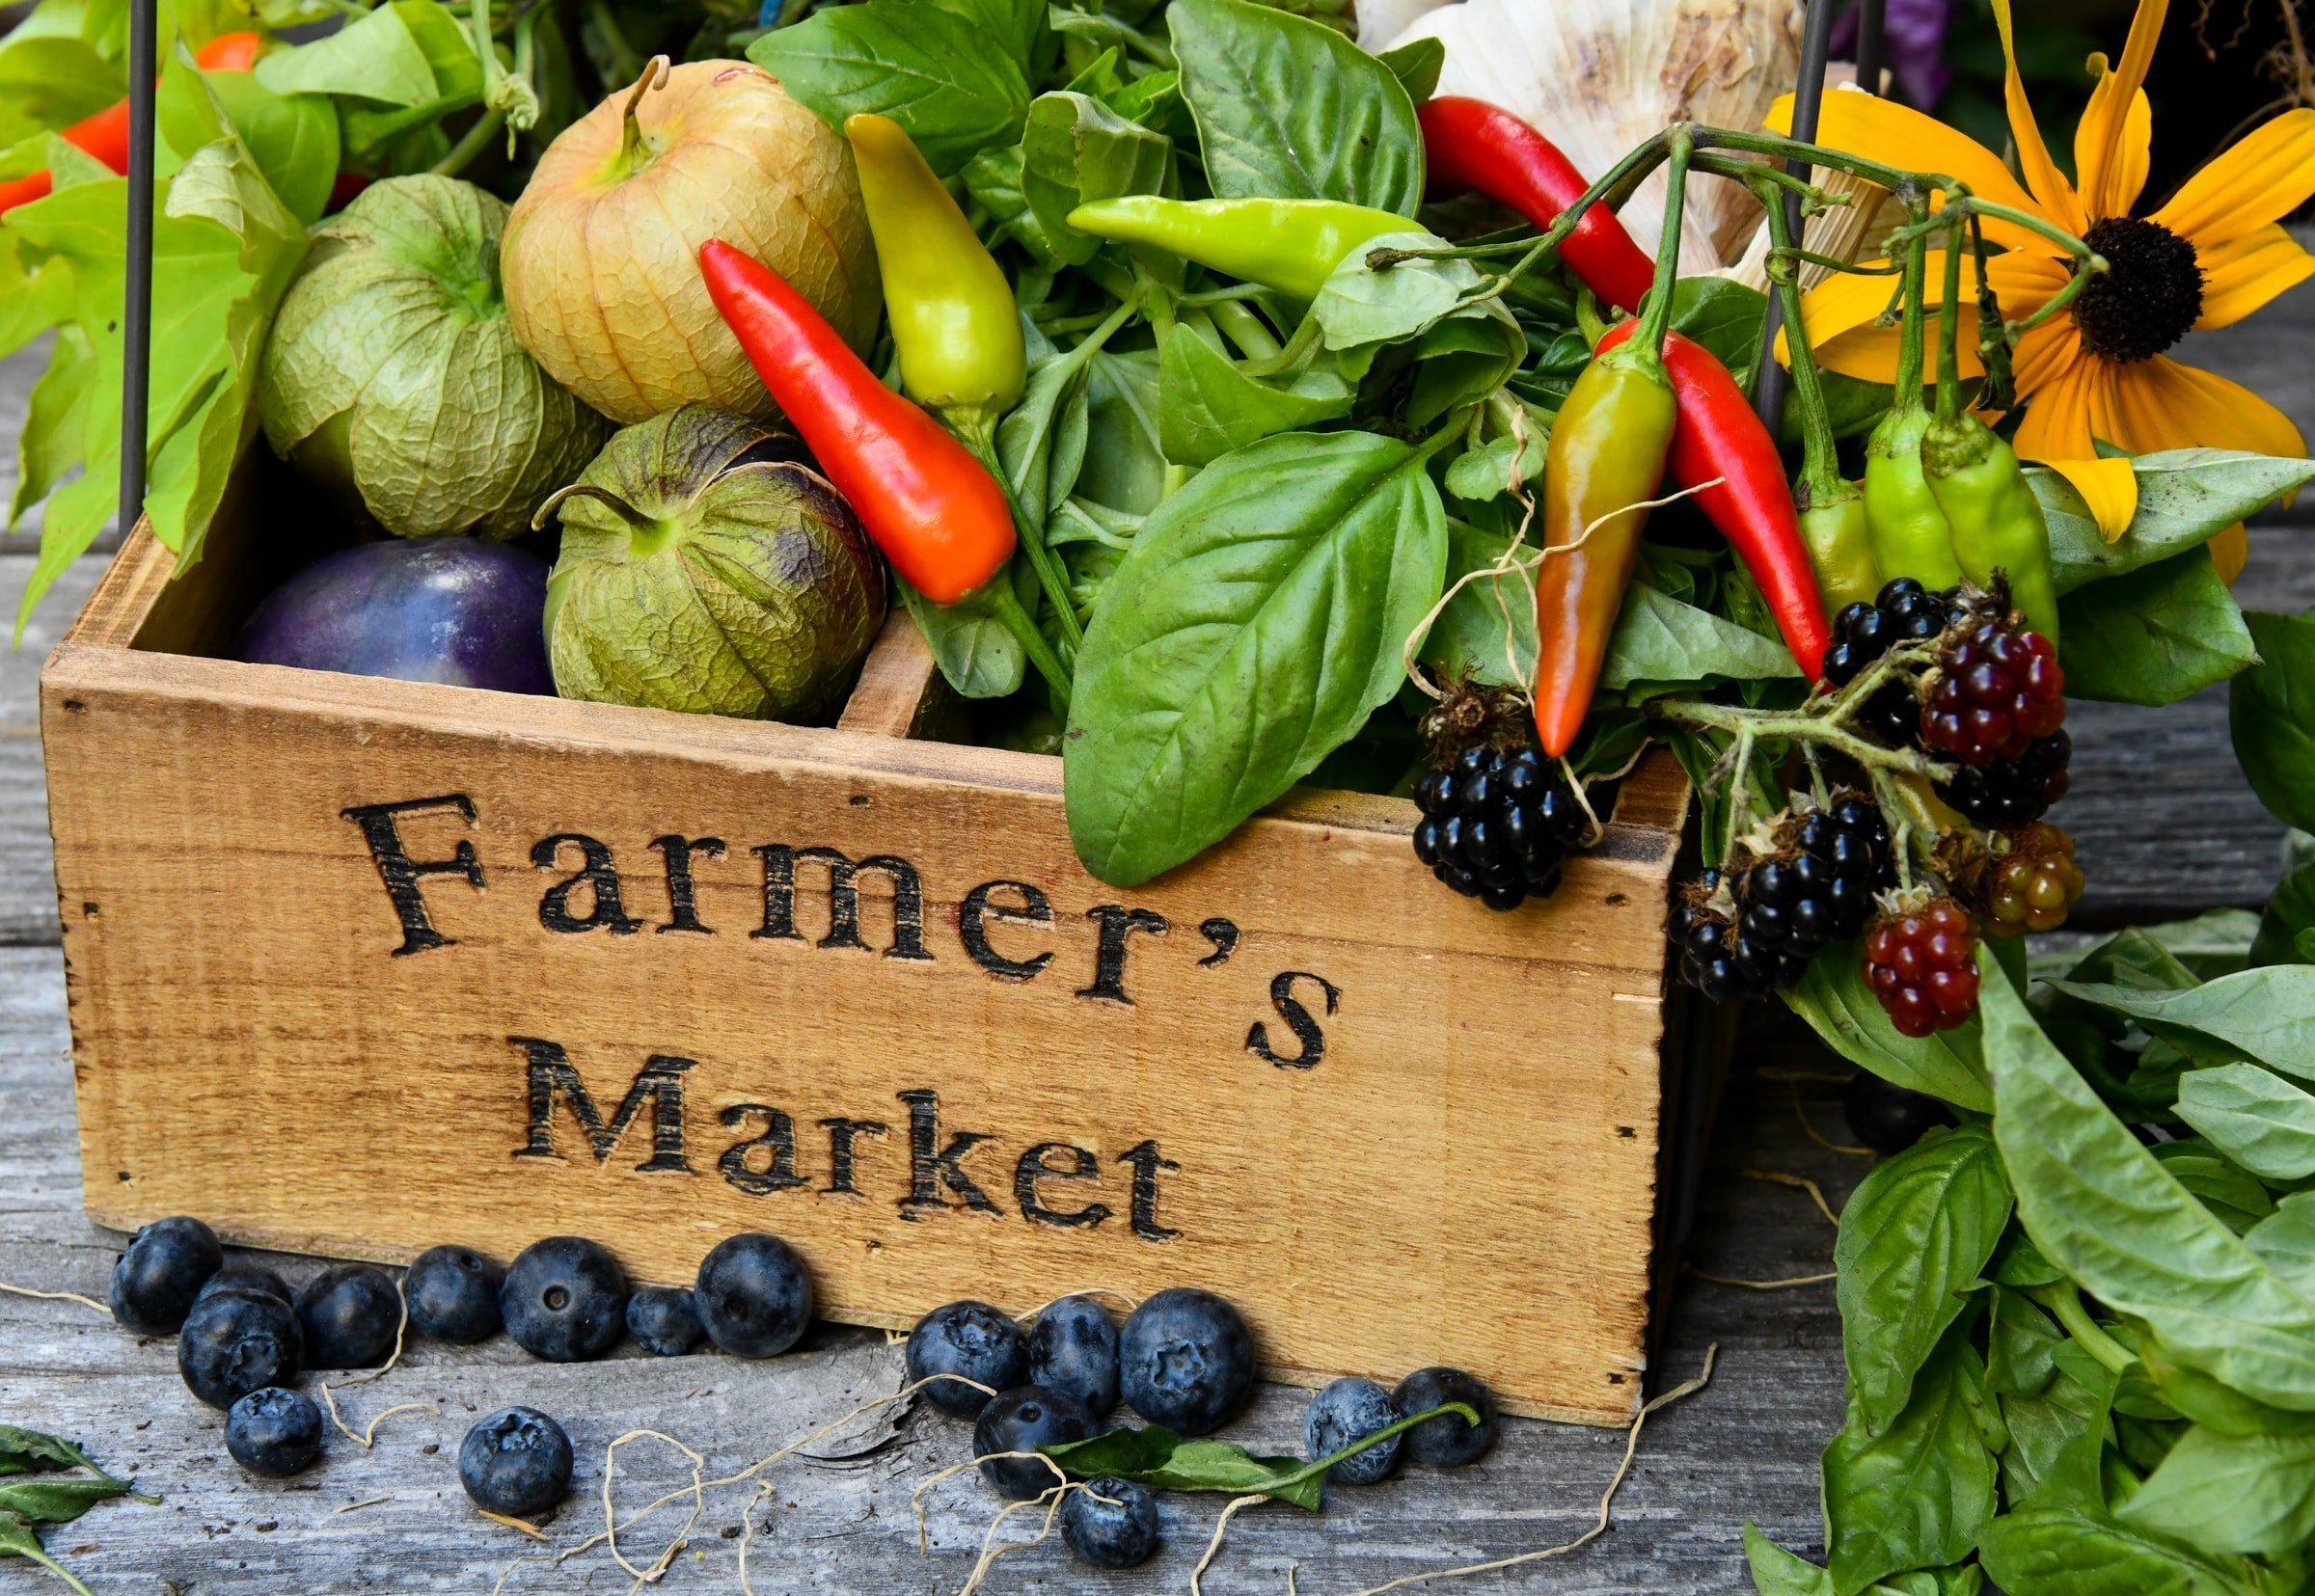 Wooden box labelled 'Farmer's Market' full of vegetables